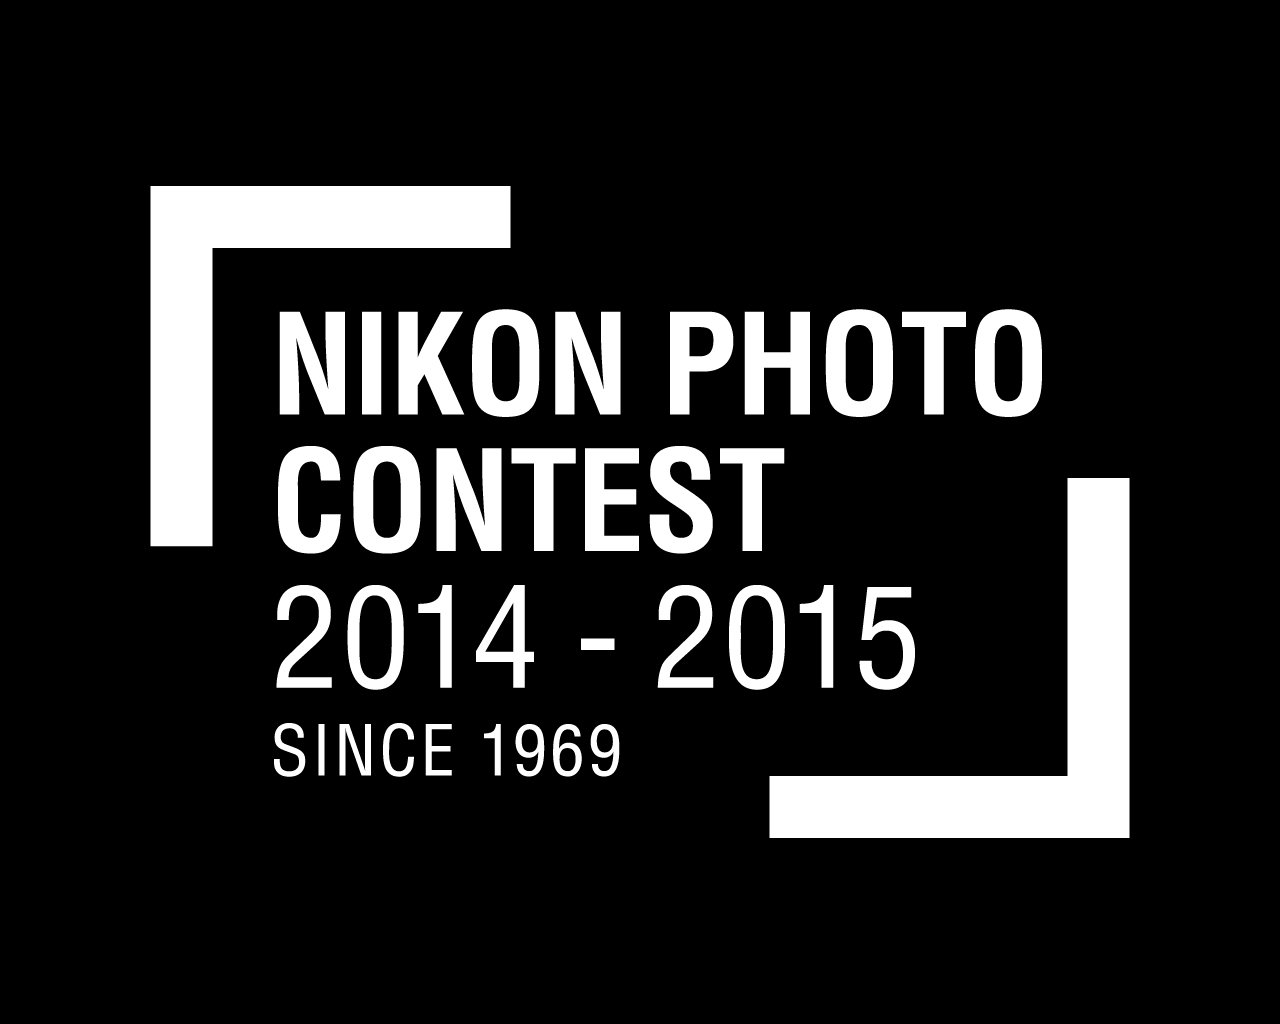 นิคอนประกาศผลผู้ชนะประกวดภาพถ่ายประจำปี 2014-2015